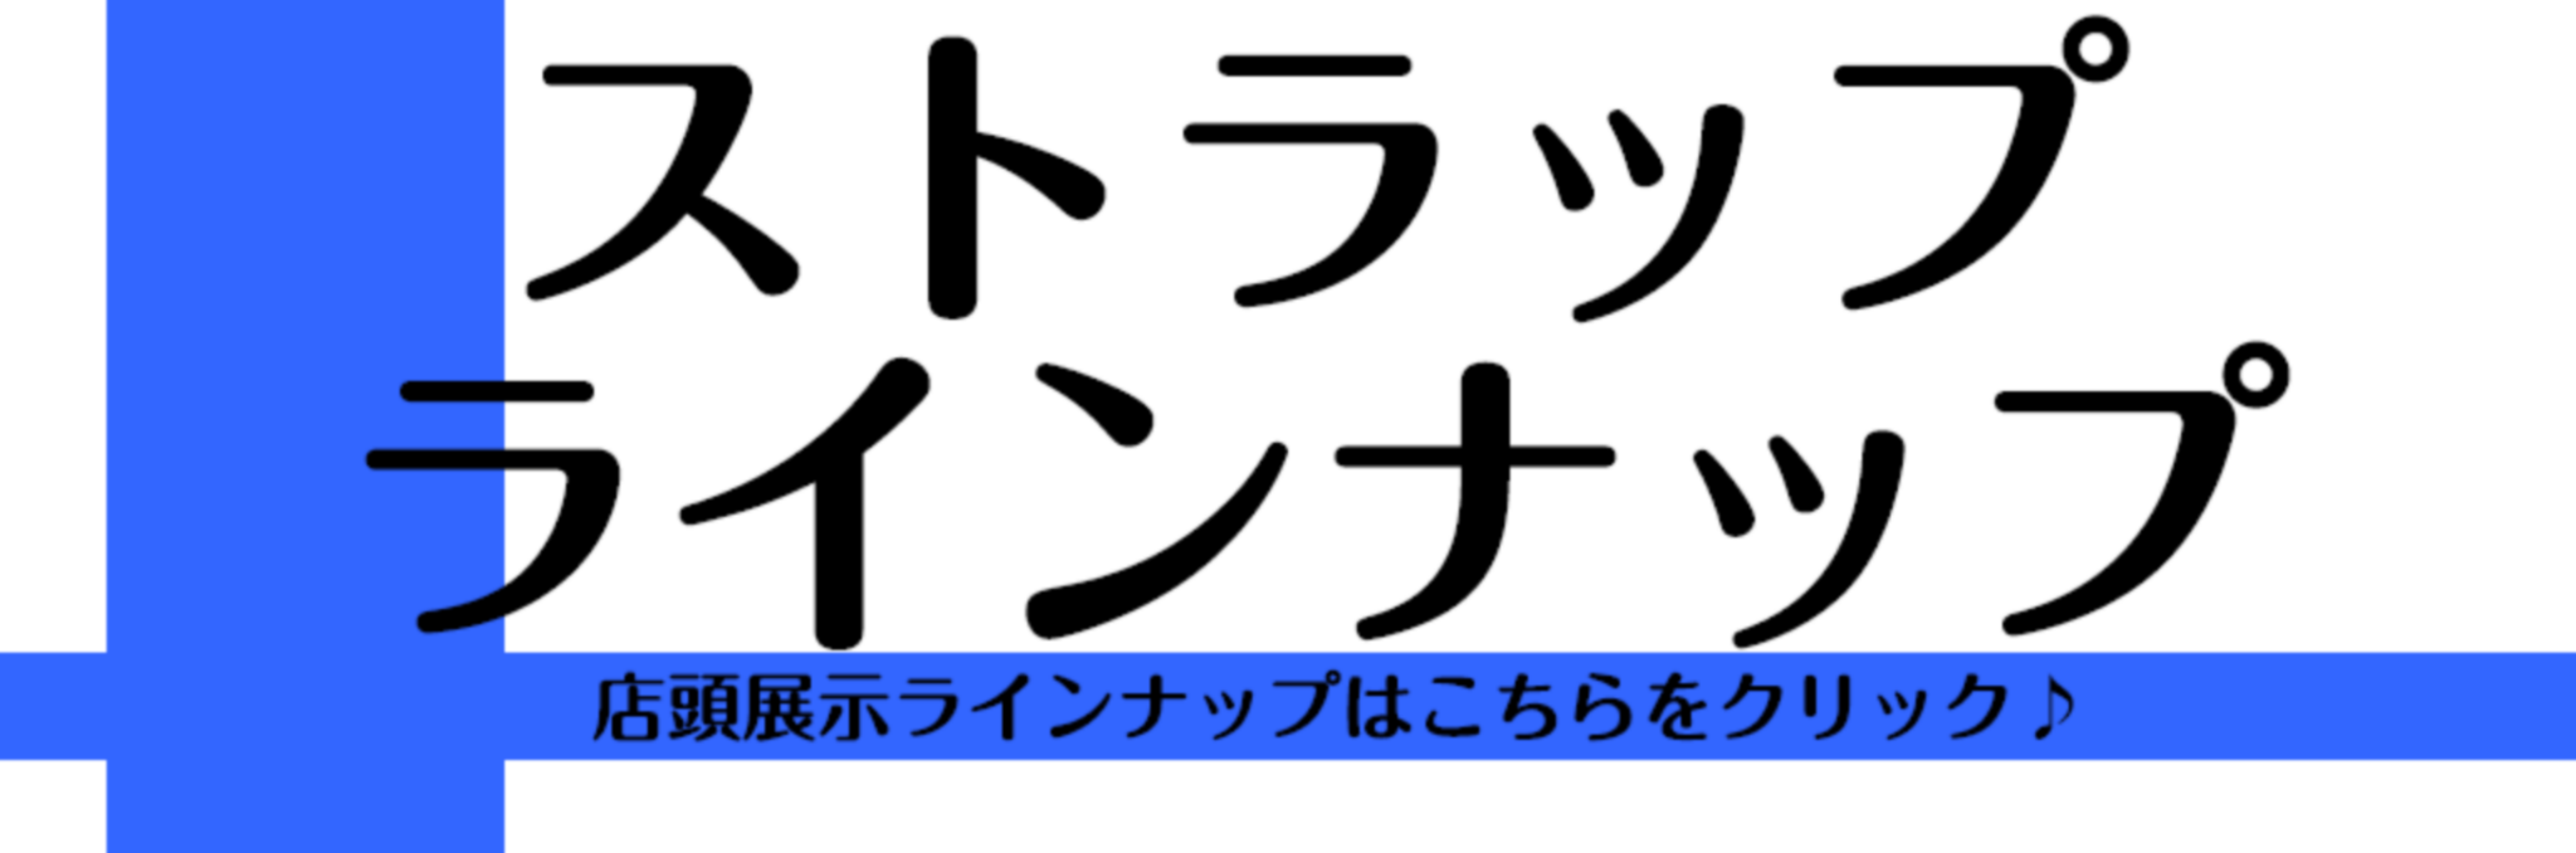 *モレラ岐阜店管楽器用ストラップラインナップ 店頭展示の管楽器用ストラップラインナップです。 自分の体に合ったストラップで演奏性が格段に上がります!ぜひお試しください。 *管楽器アクセサリー関連ページ [https://www.shimamura.co.jp/shop/gifu/winds-stri […]